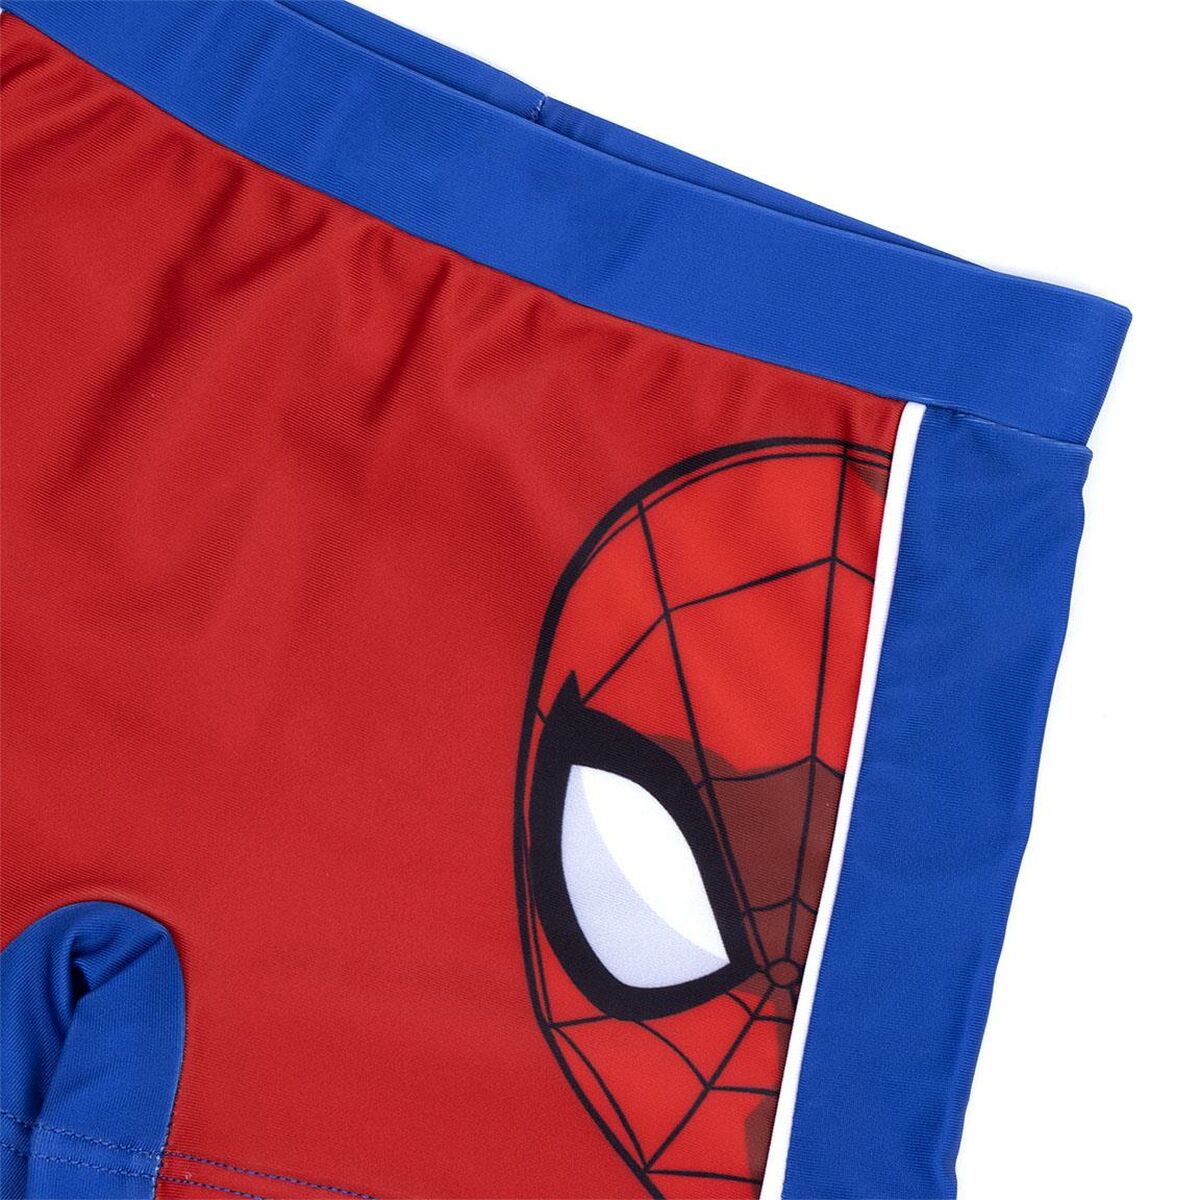 Costume da Bagno Boxer per Bambini Spiderman Rosso